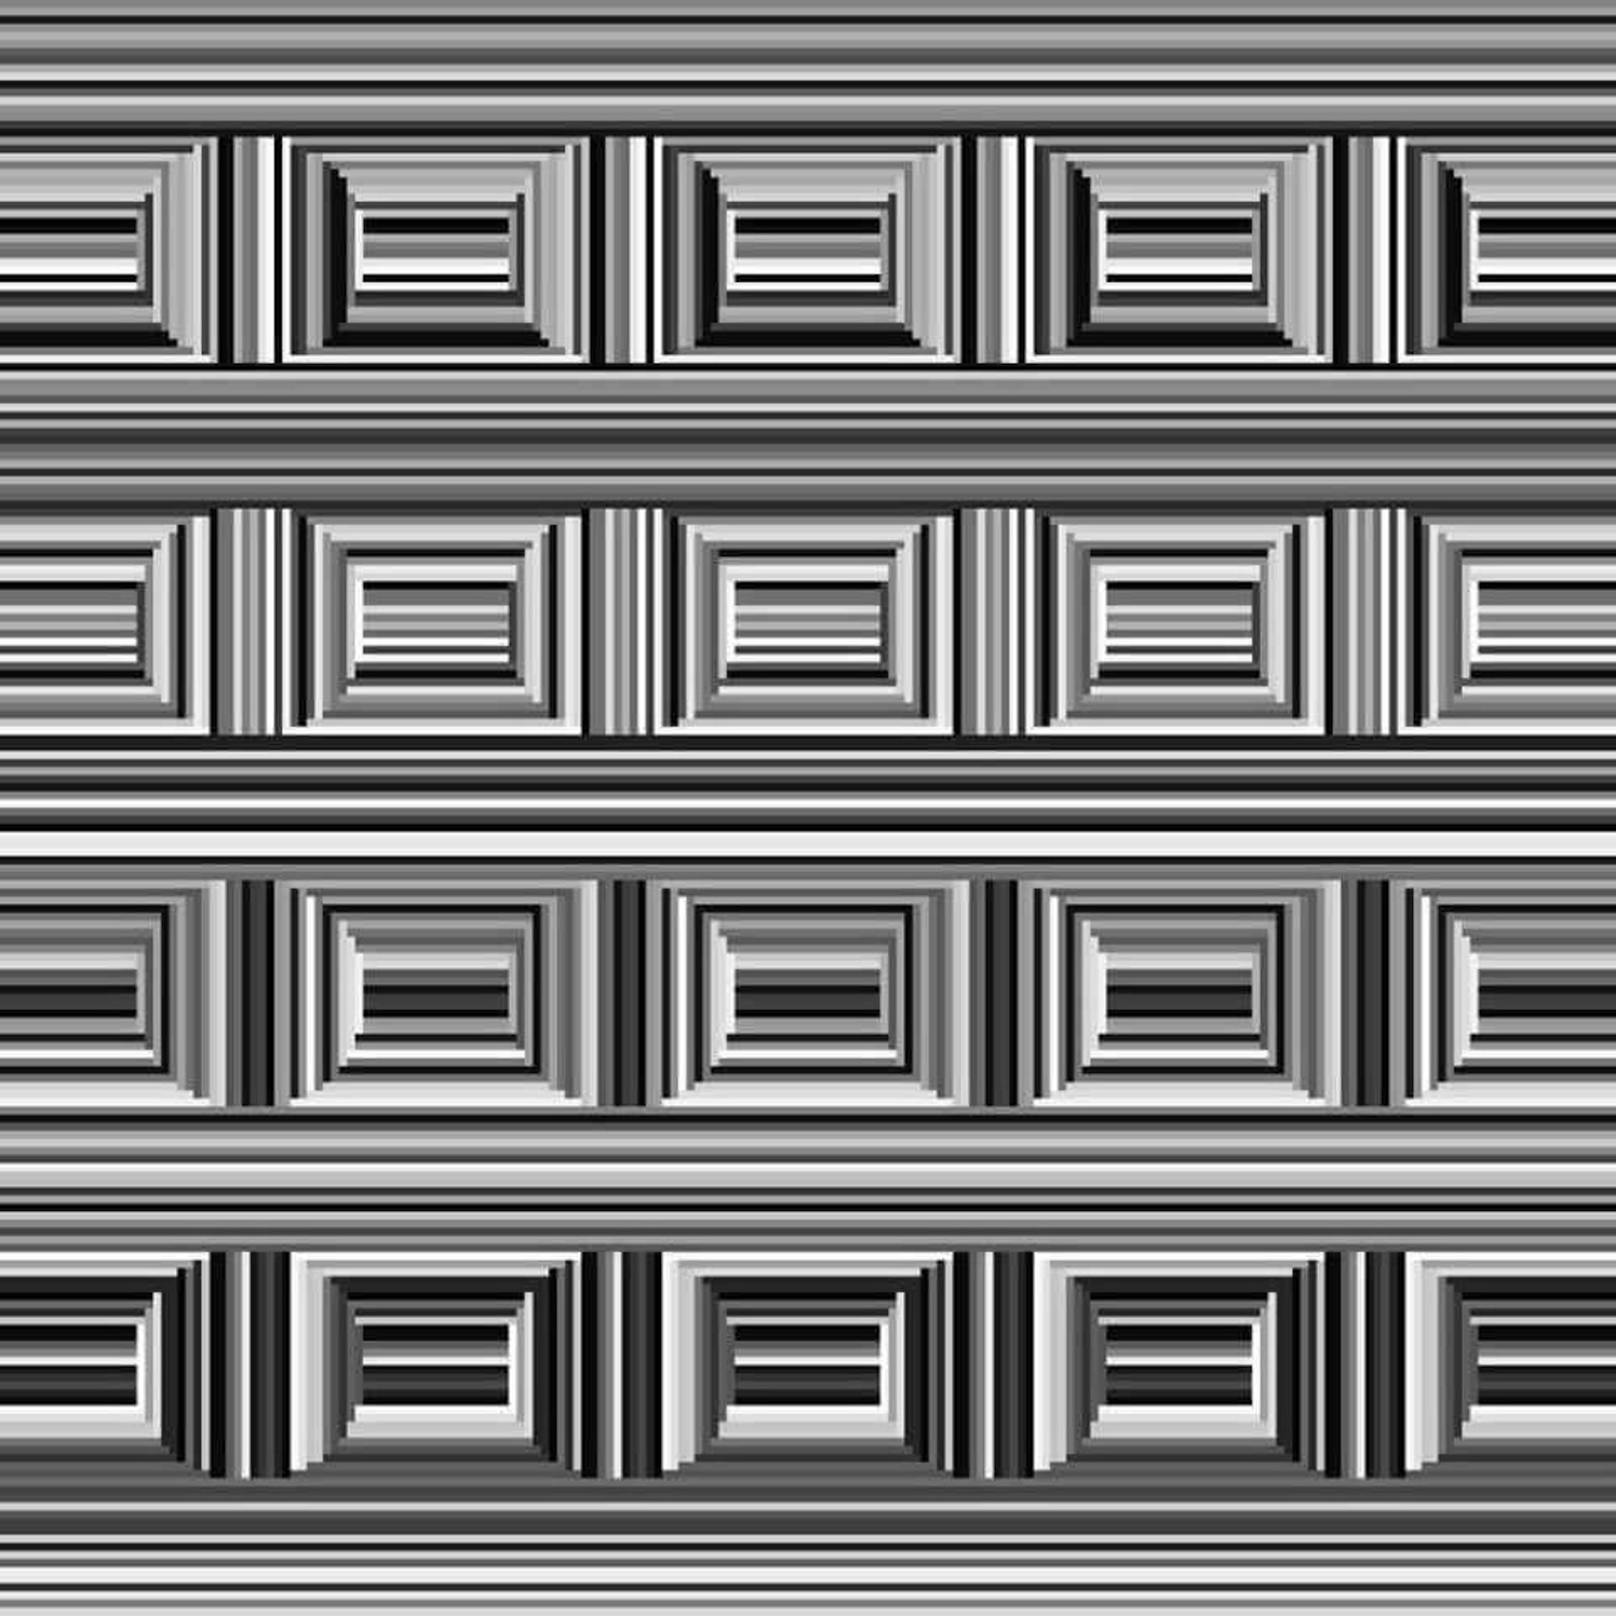 Hier noch weitere faszinierende Illusionen: <a href="https://www.heute.at/s/wie-viele-kreise-siehst-du-auf-diesem-bild-100089729">Auf diesem Bild verstecken sich 16 Kreise.</a> Glaubst du nicht?&nbsp;<strong>Auf dem nächsten Bild folgt die Auflösung &gt;</strong>